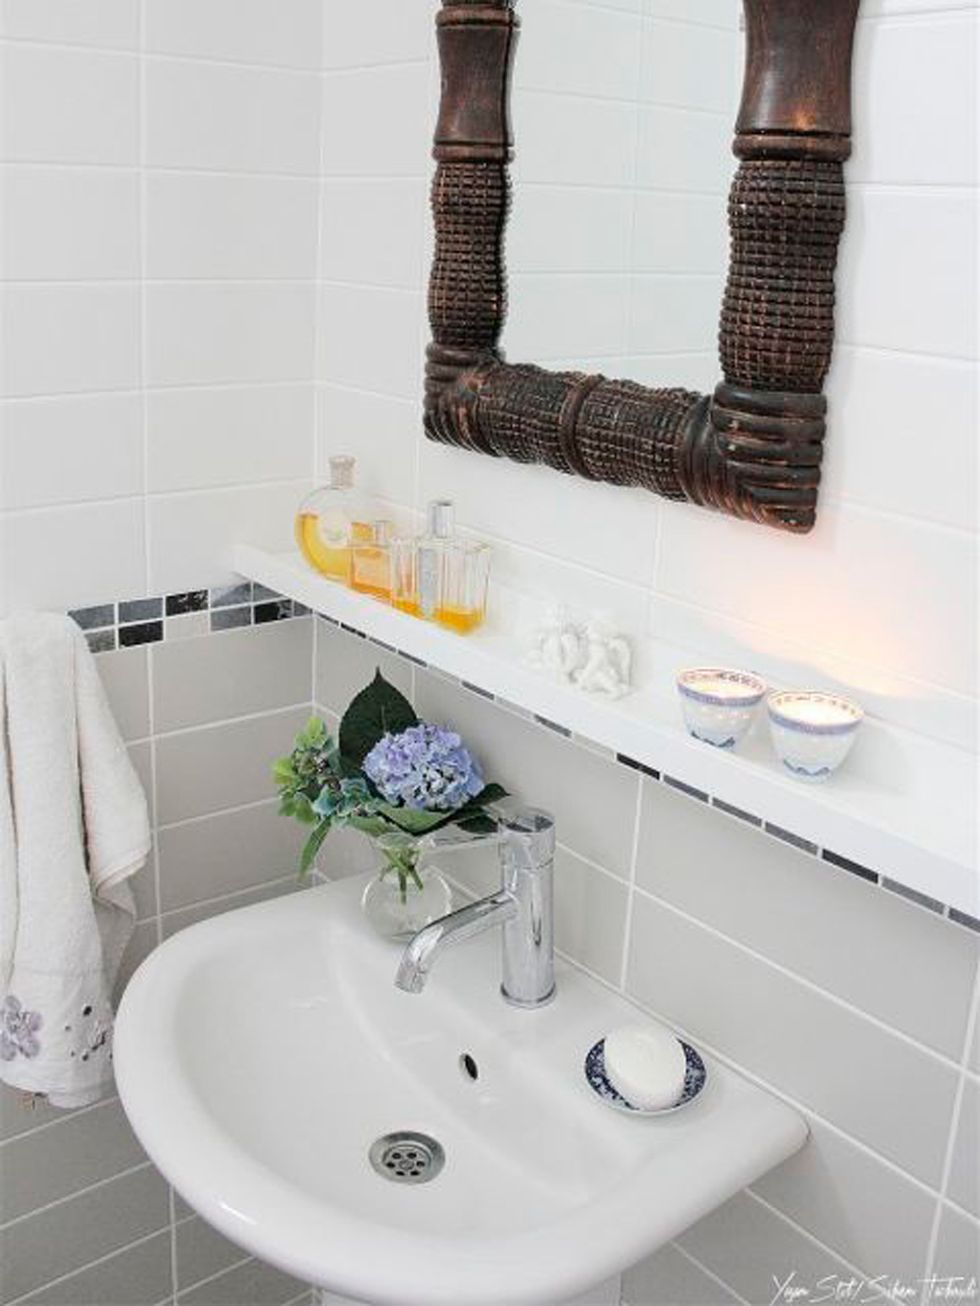 Bathroom, Property, Room, Bathroom sink, Tile, Tap, Sink, Plumbing fixture, Interior design, Wall, 